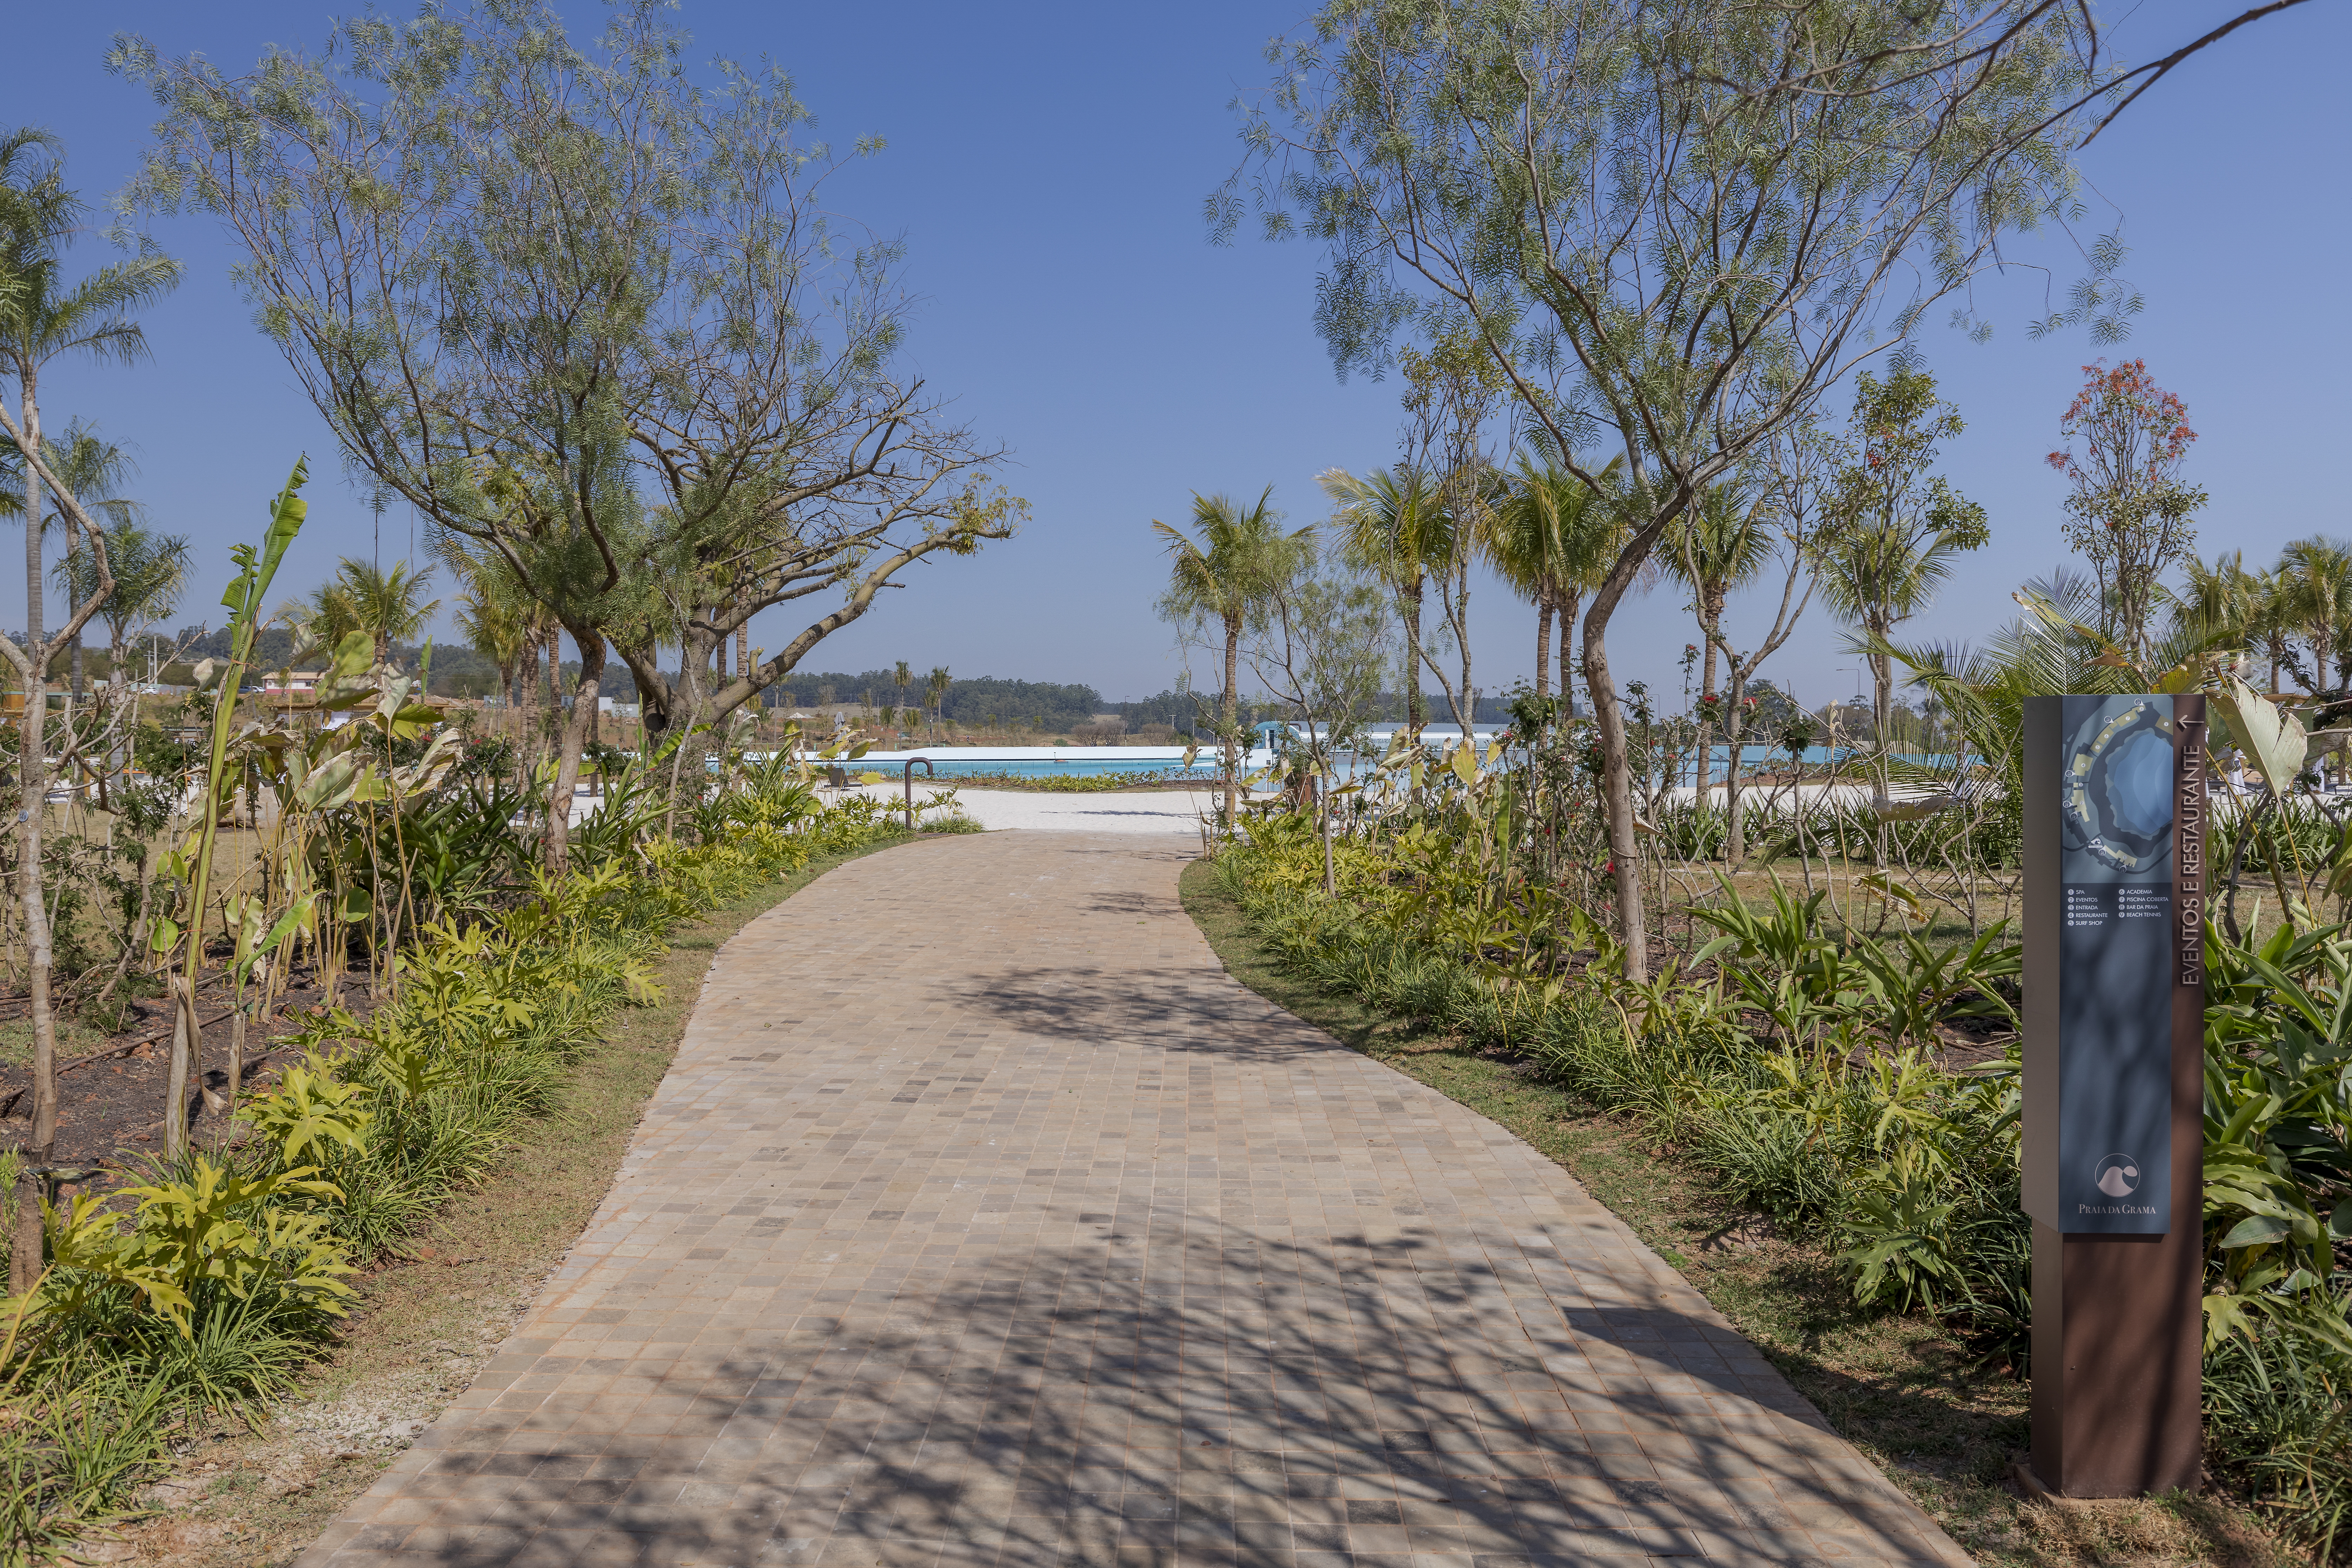 Praia-da-Grama-Rafael-Renzo-3 Condomínio de luxo ganha praia artificial com títulos que custam 800 mil